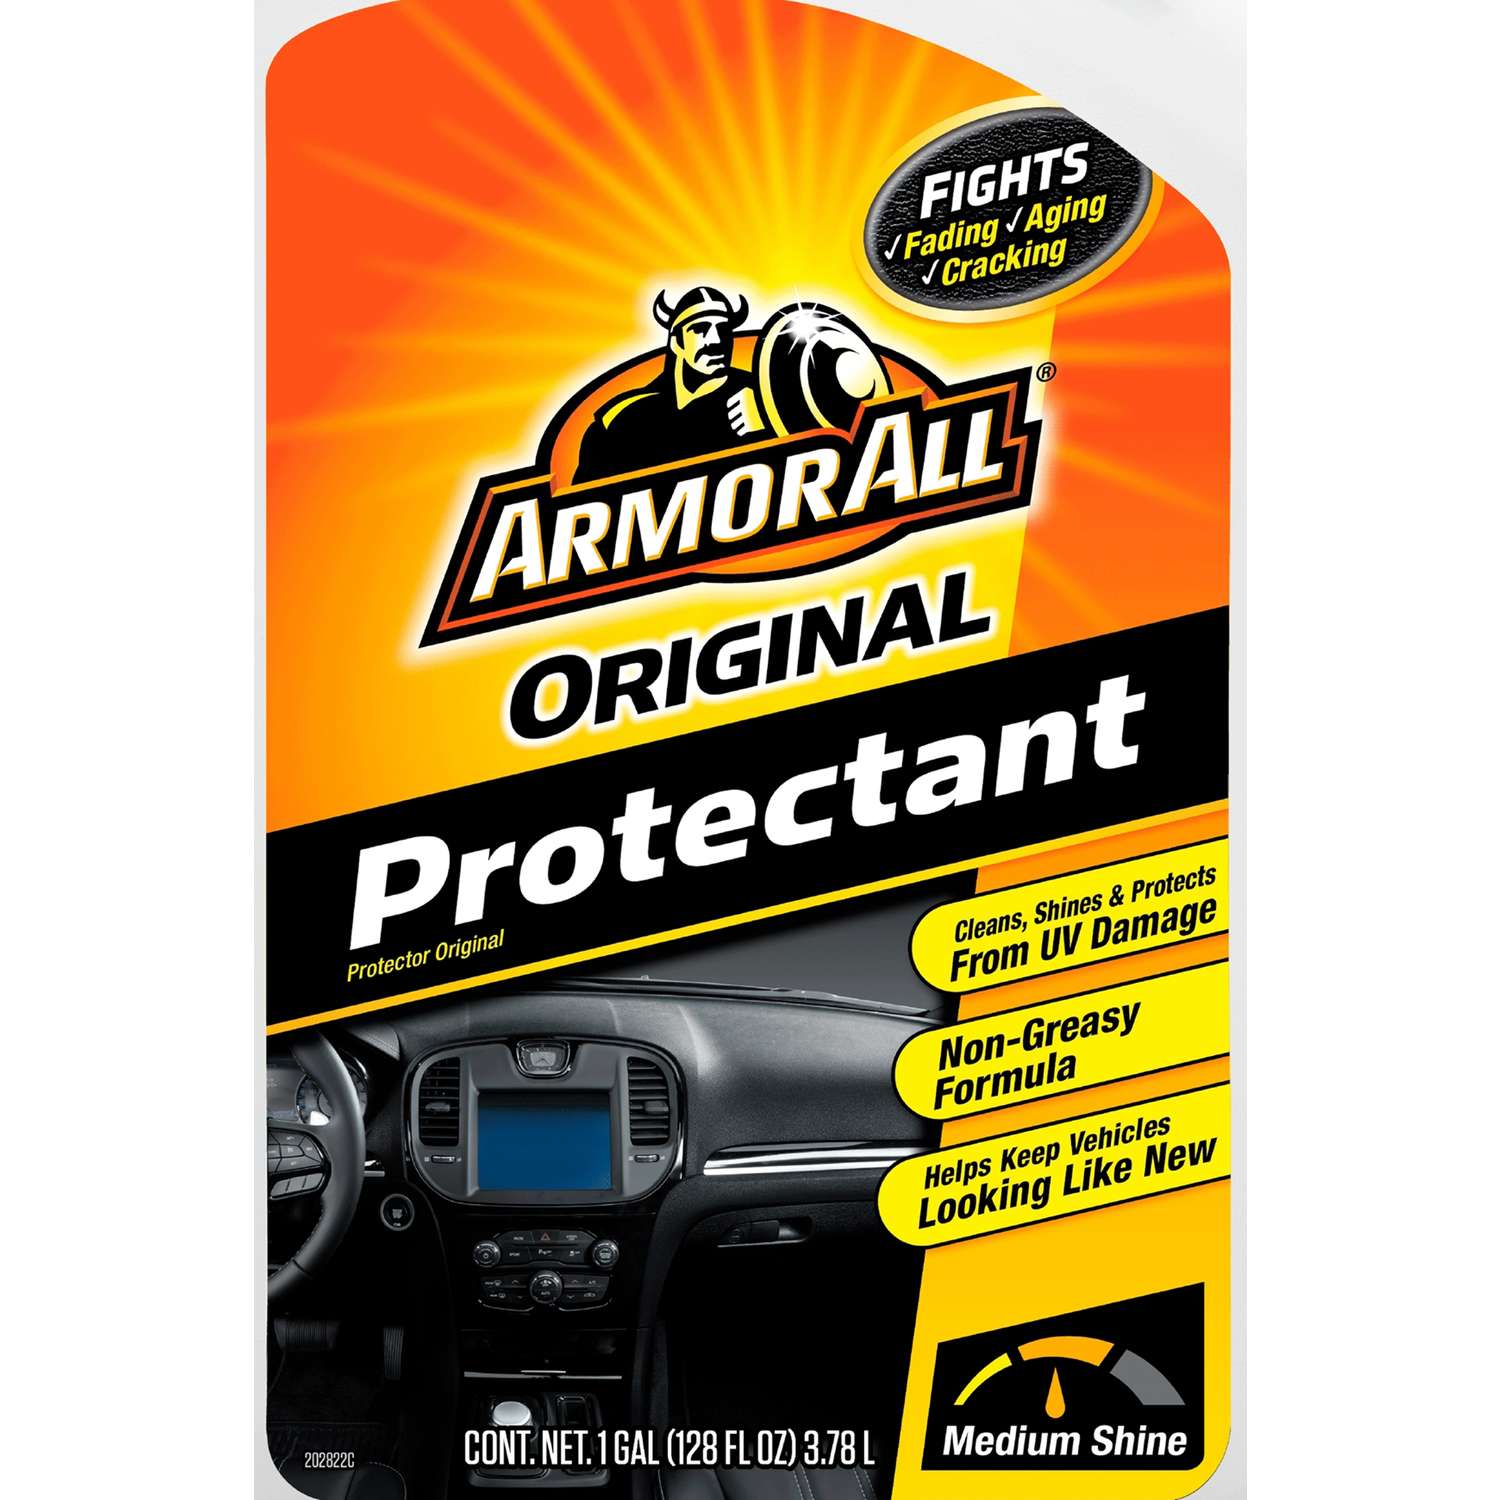 Original Protectant Refill Armor All armorall